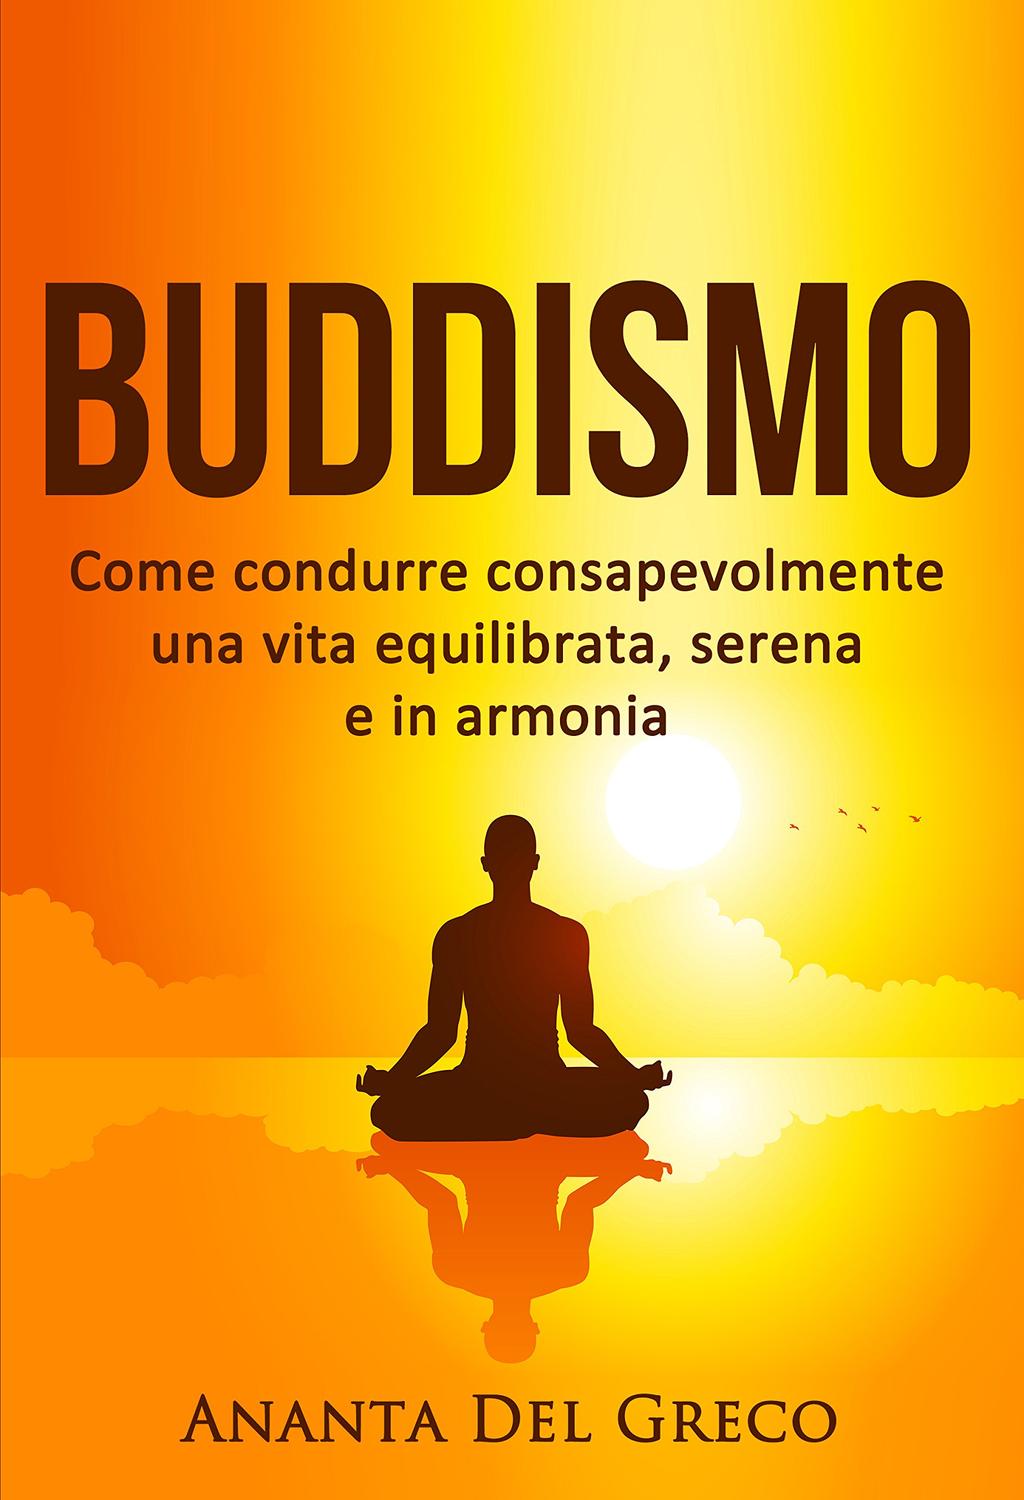 Buddismo: Come condurre consapevolmente una vita equilibrata, serena e in armonia Télécharger ou Lire en ligne Buddismo: Come condurre consapevolmente una vita equilibrata, serena e in armonia livre